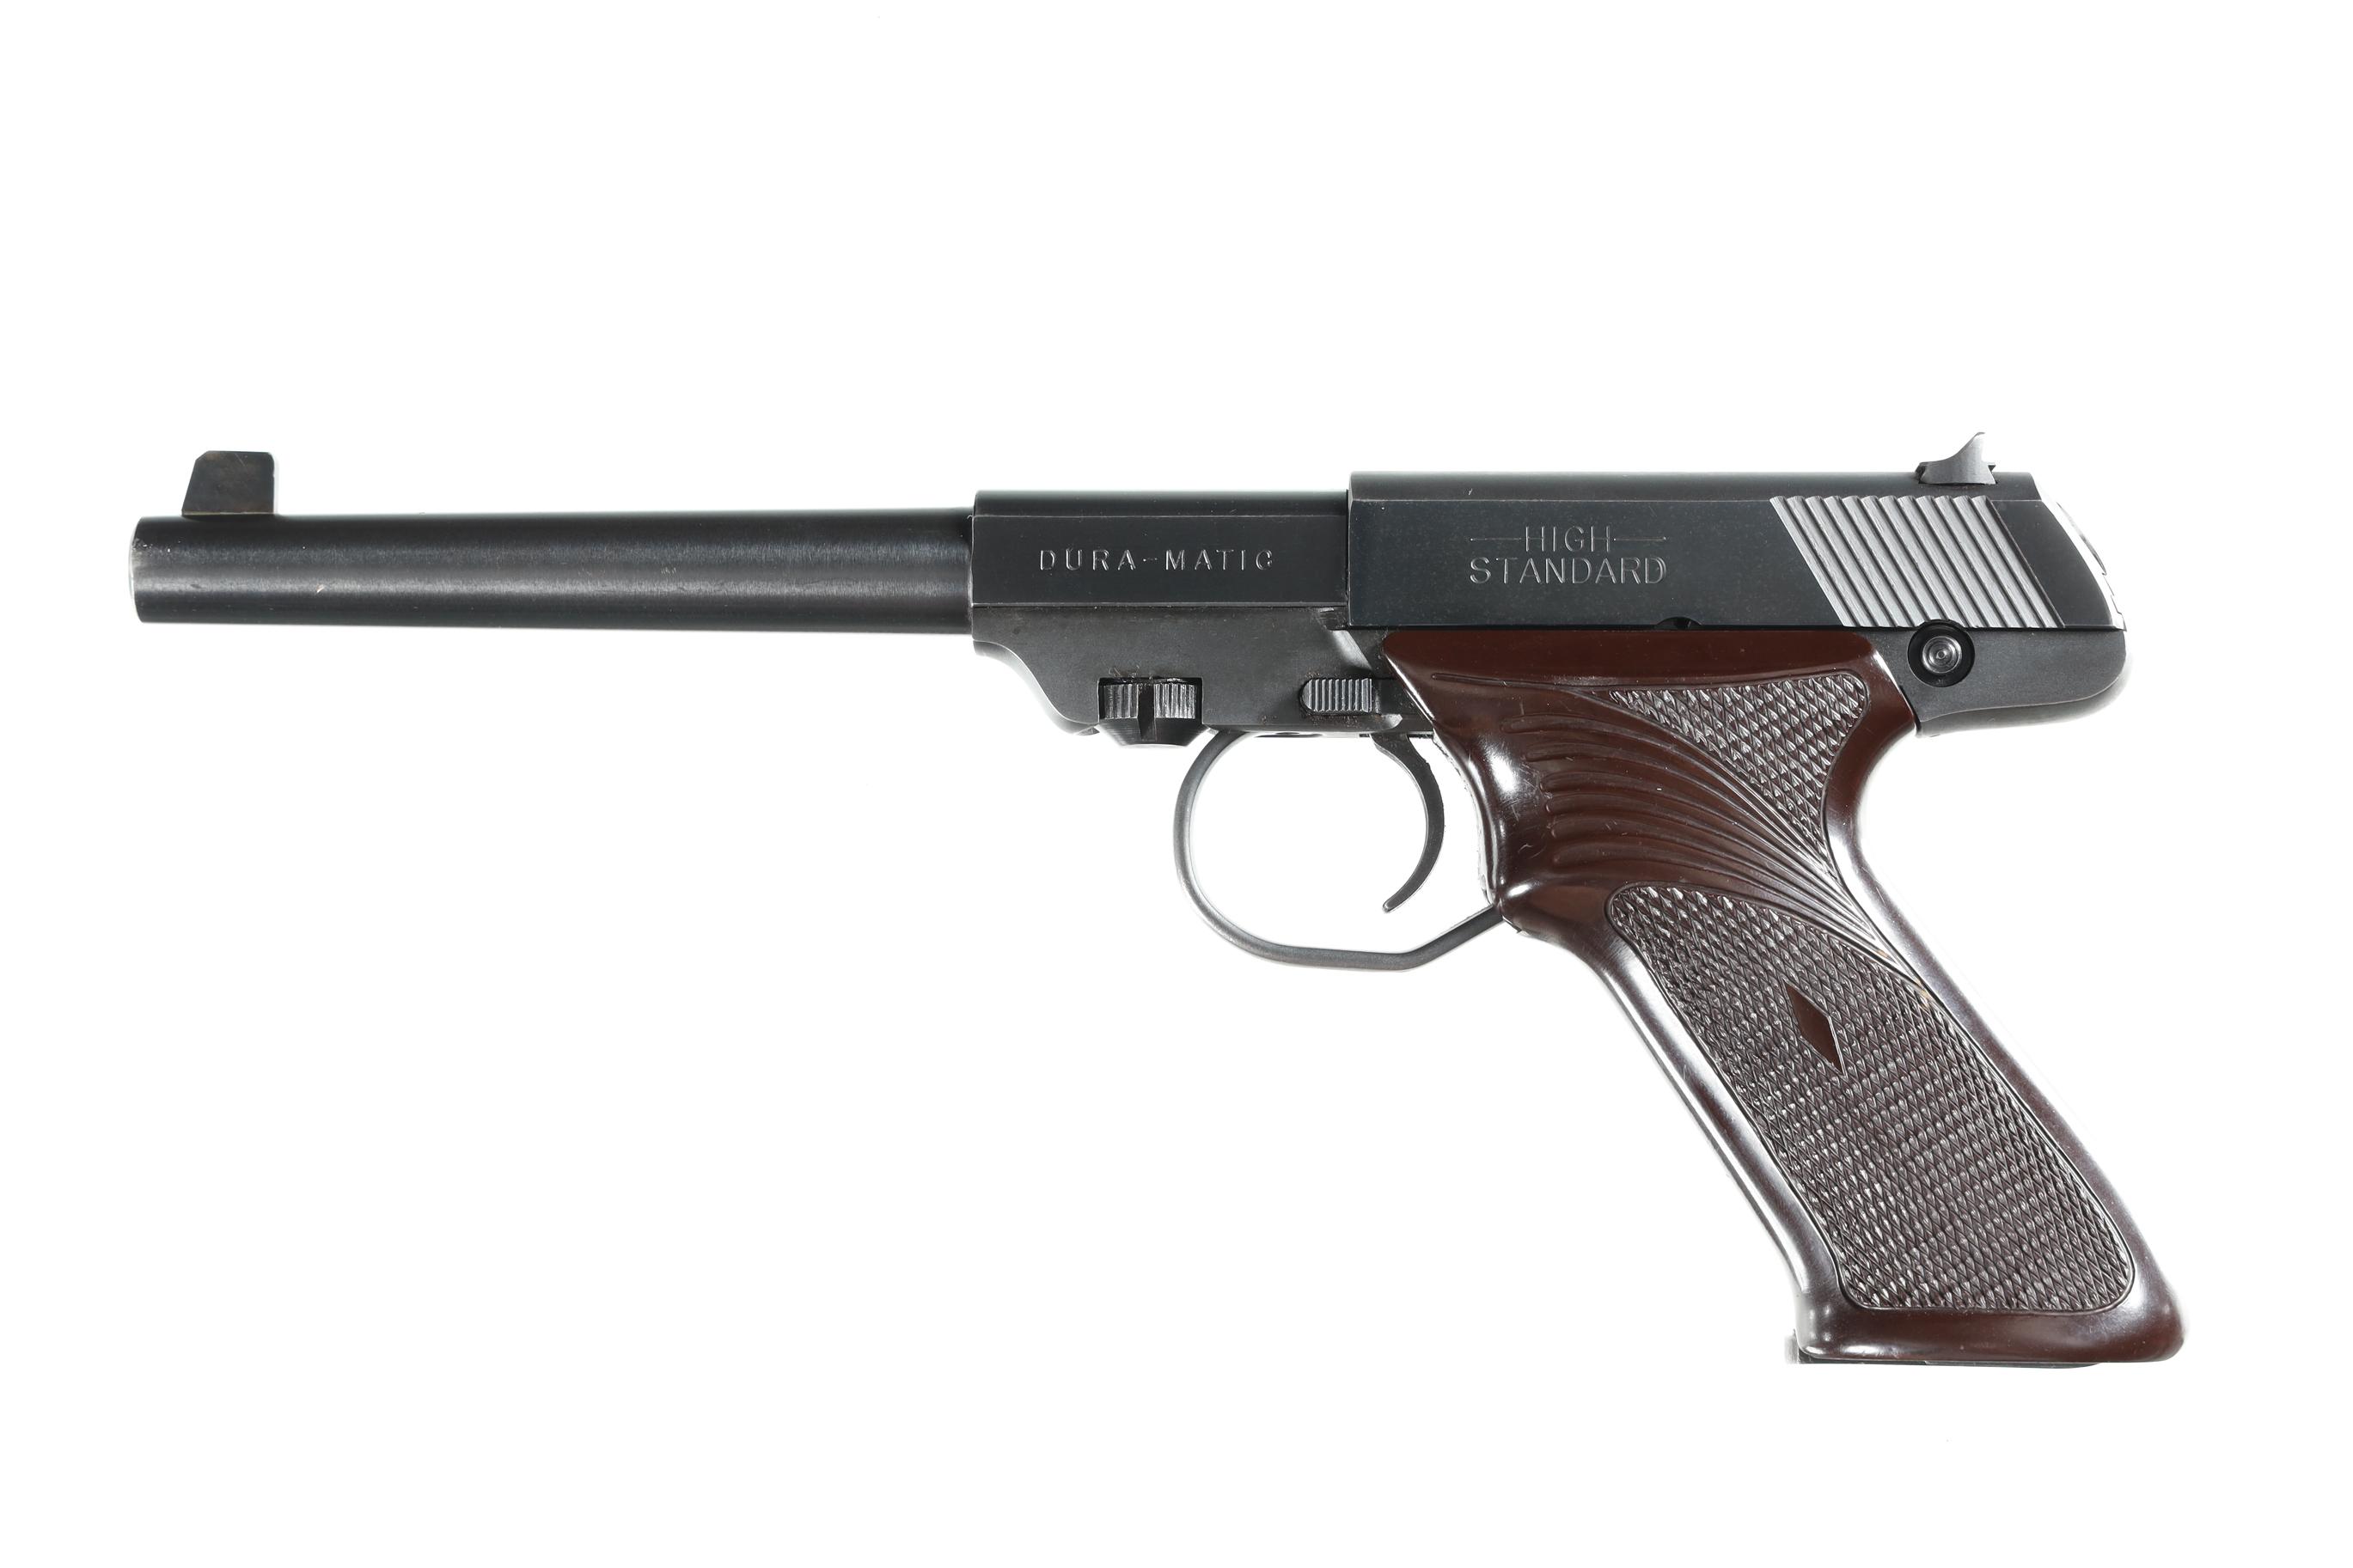 High Standard M-101 Dura-Matic Pistol .22 lr